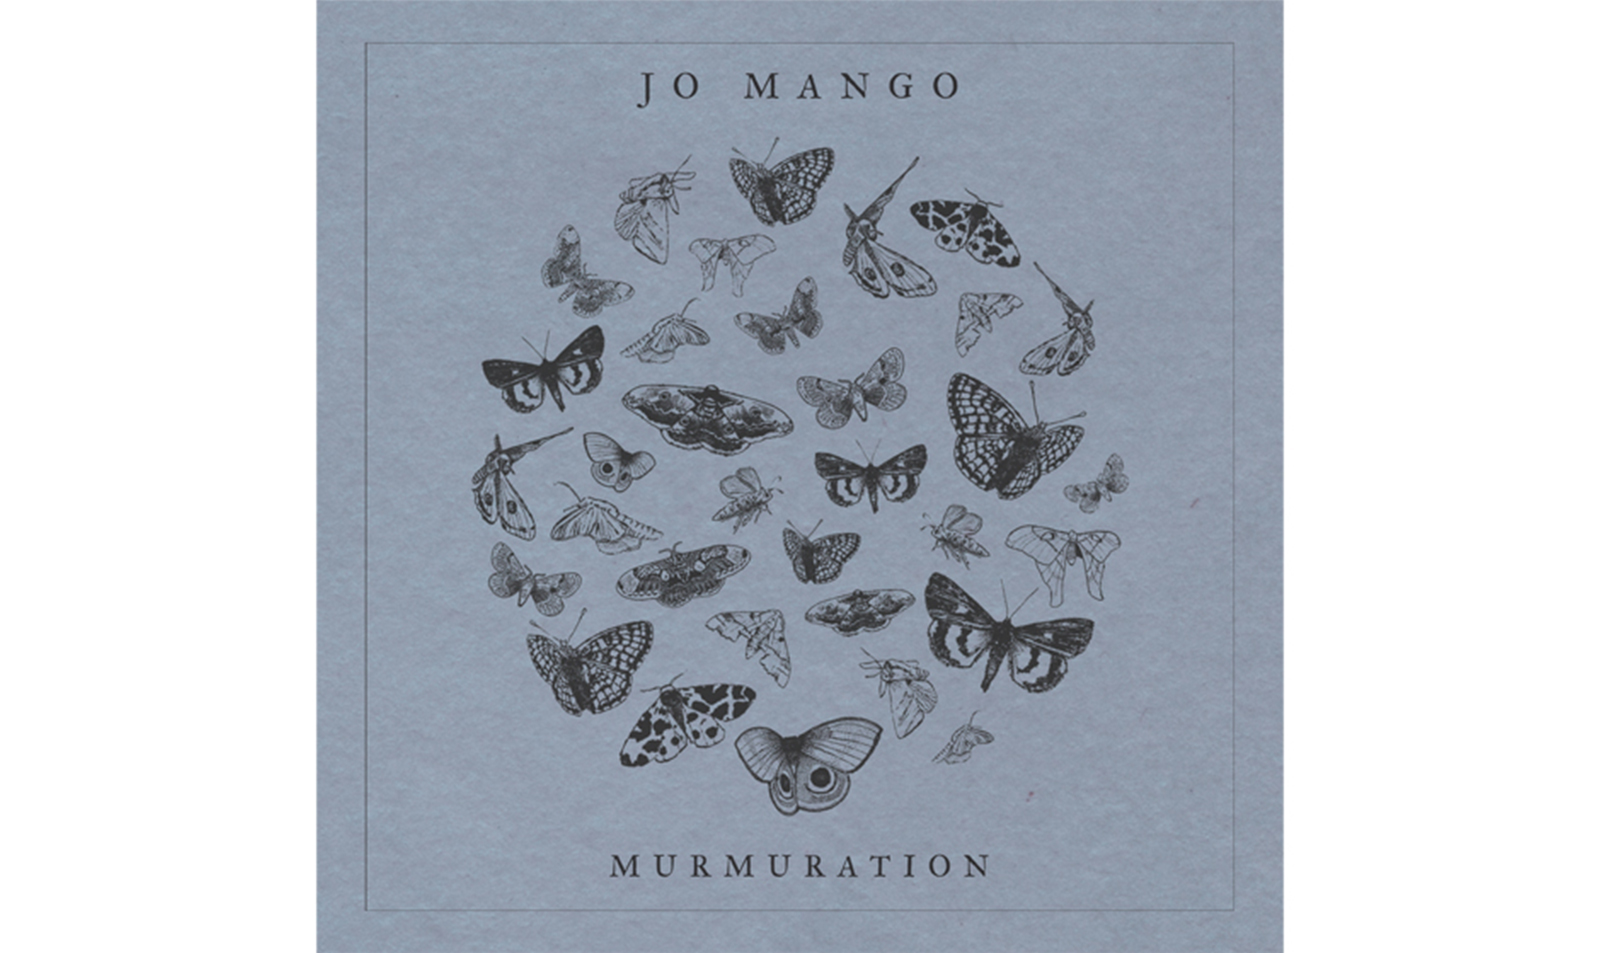 “Murmuration” by Jo Mango